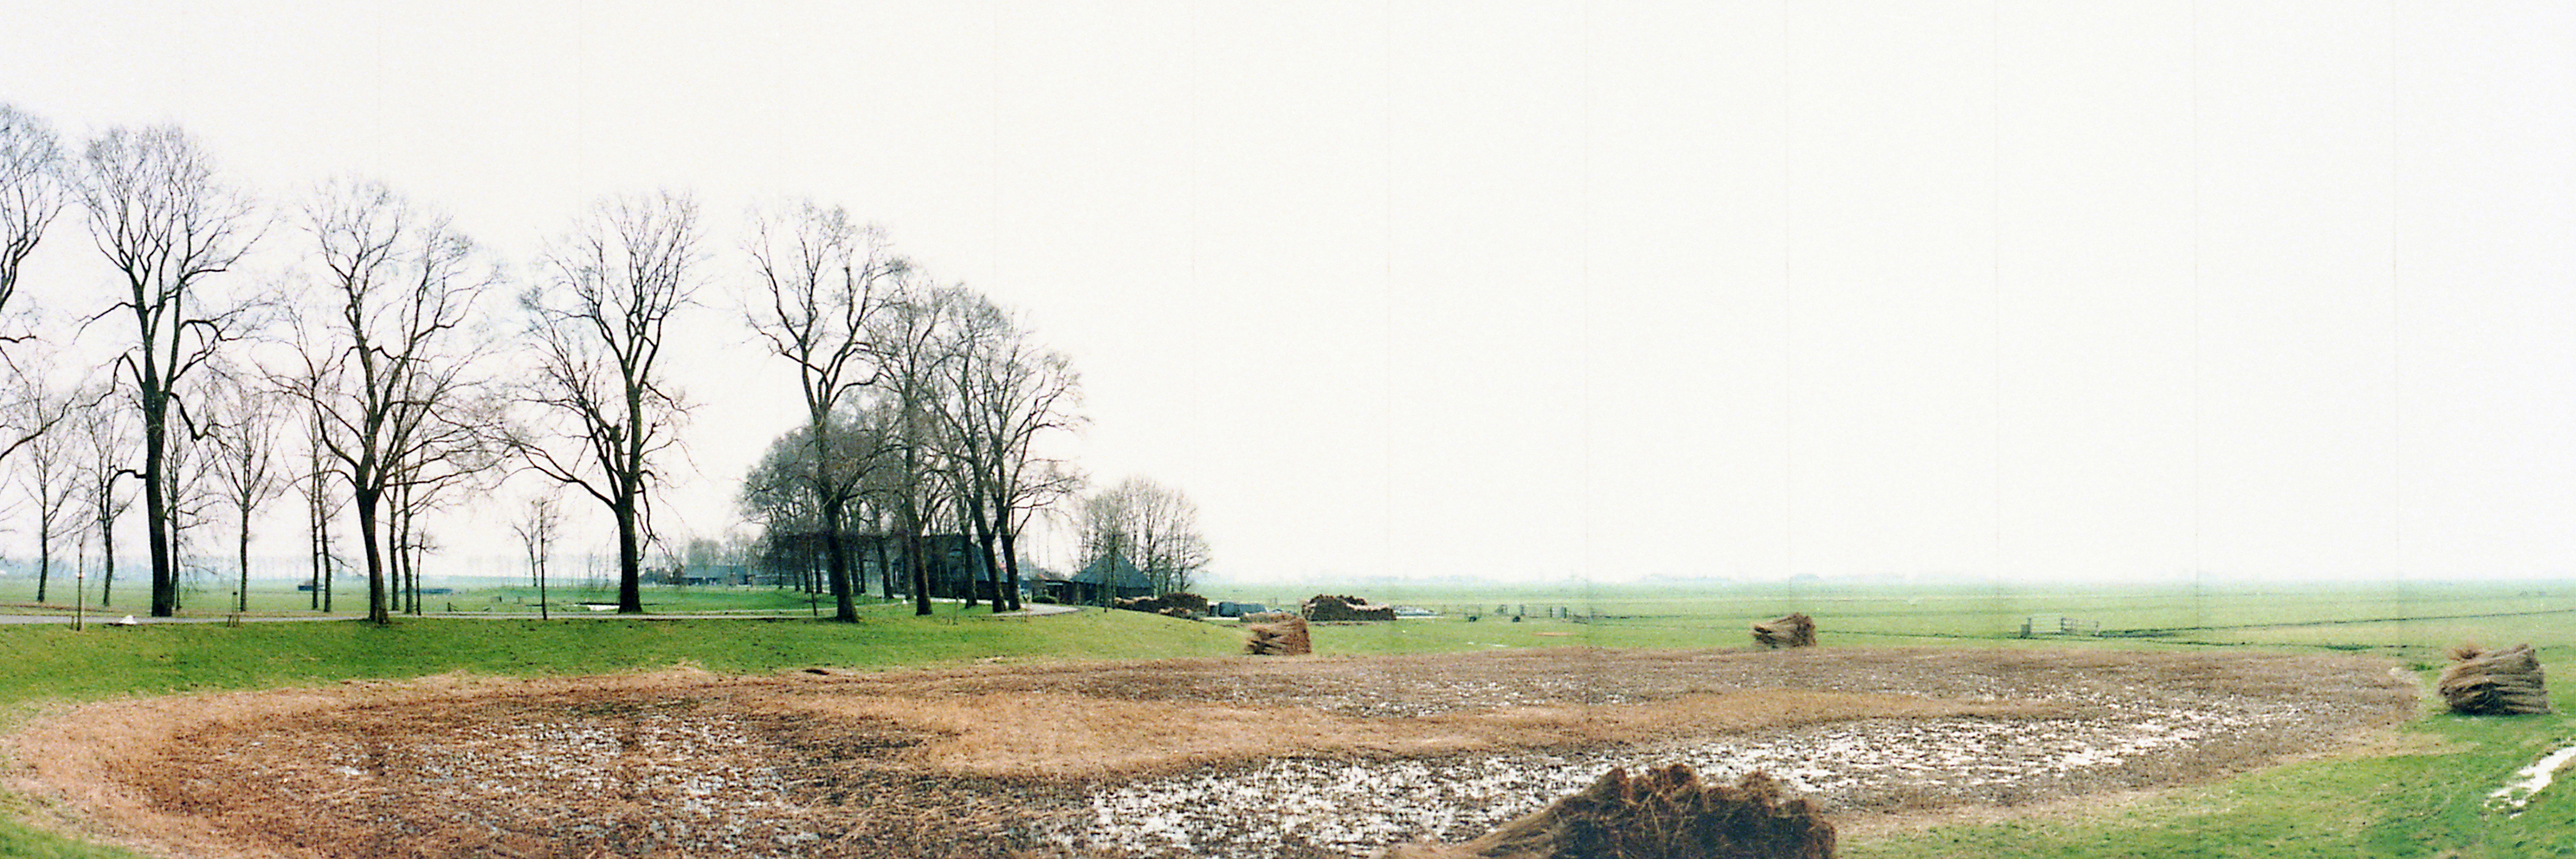 Jan Koster | Zwartendijk en de polder Dronthen,winter | 17 januari 1995 | 51 x 132 cm  